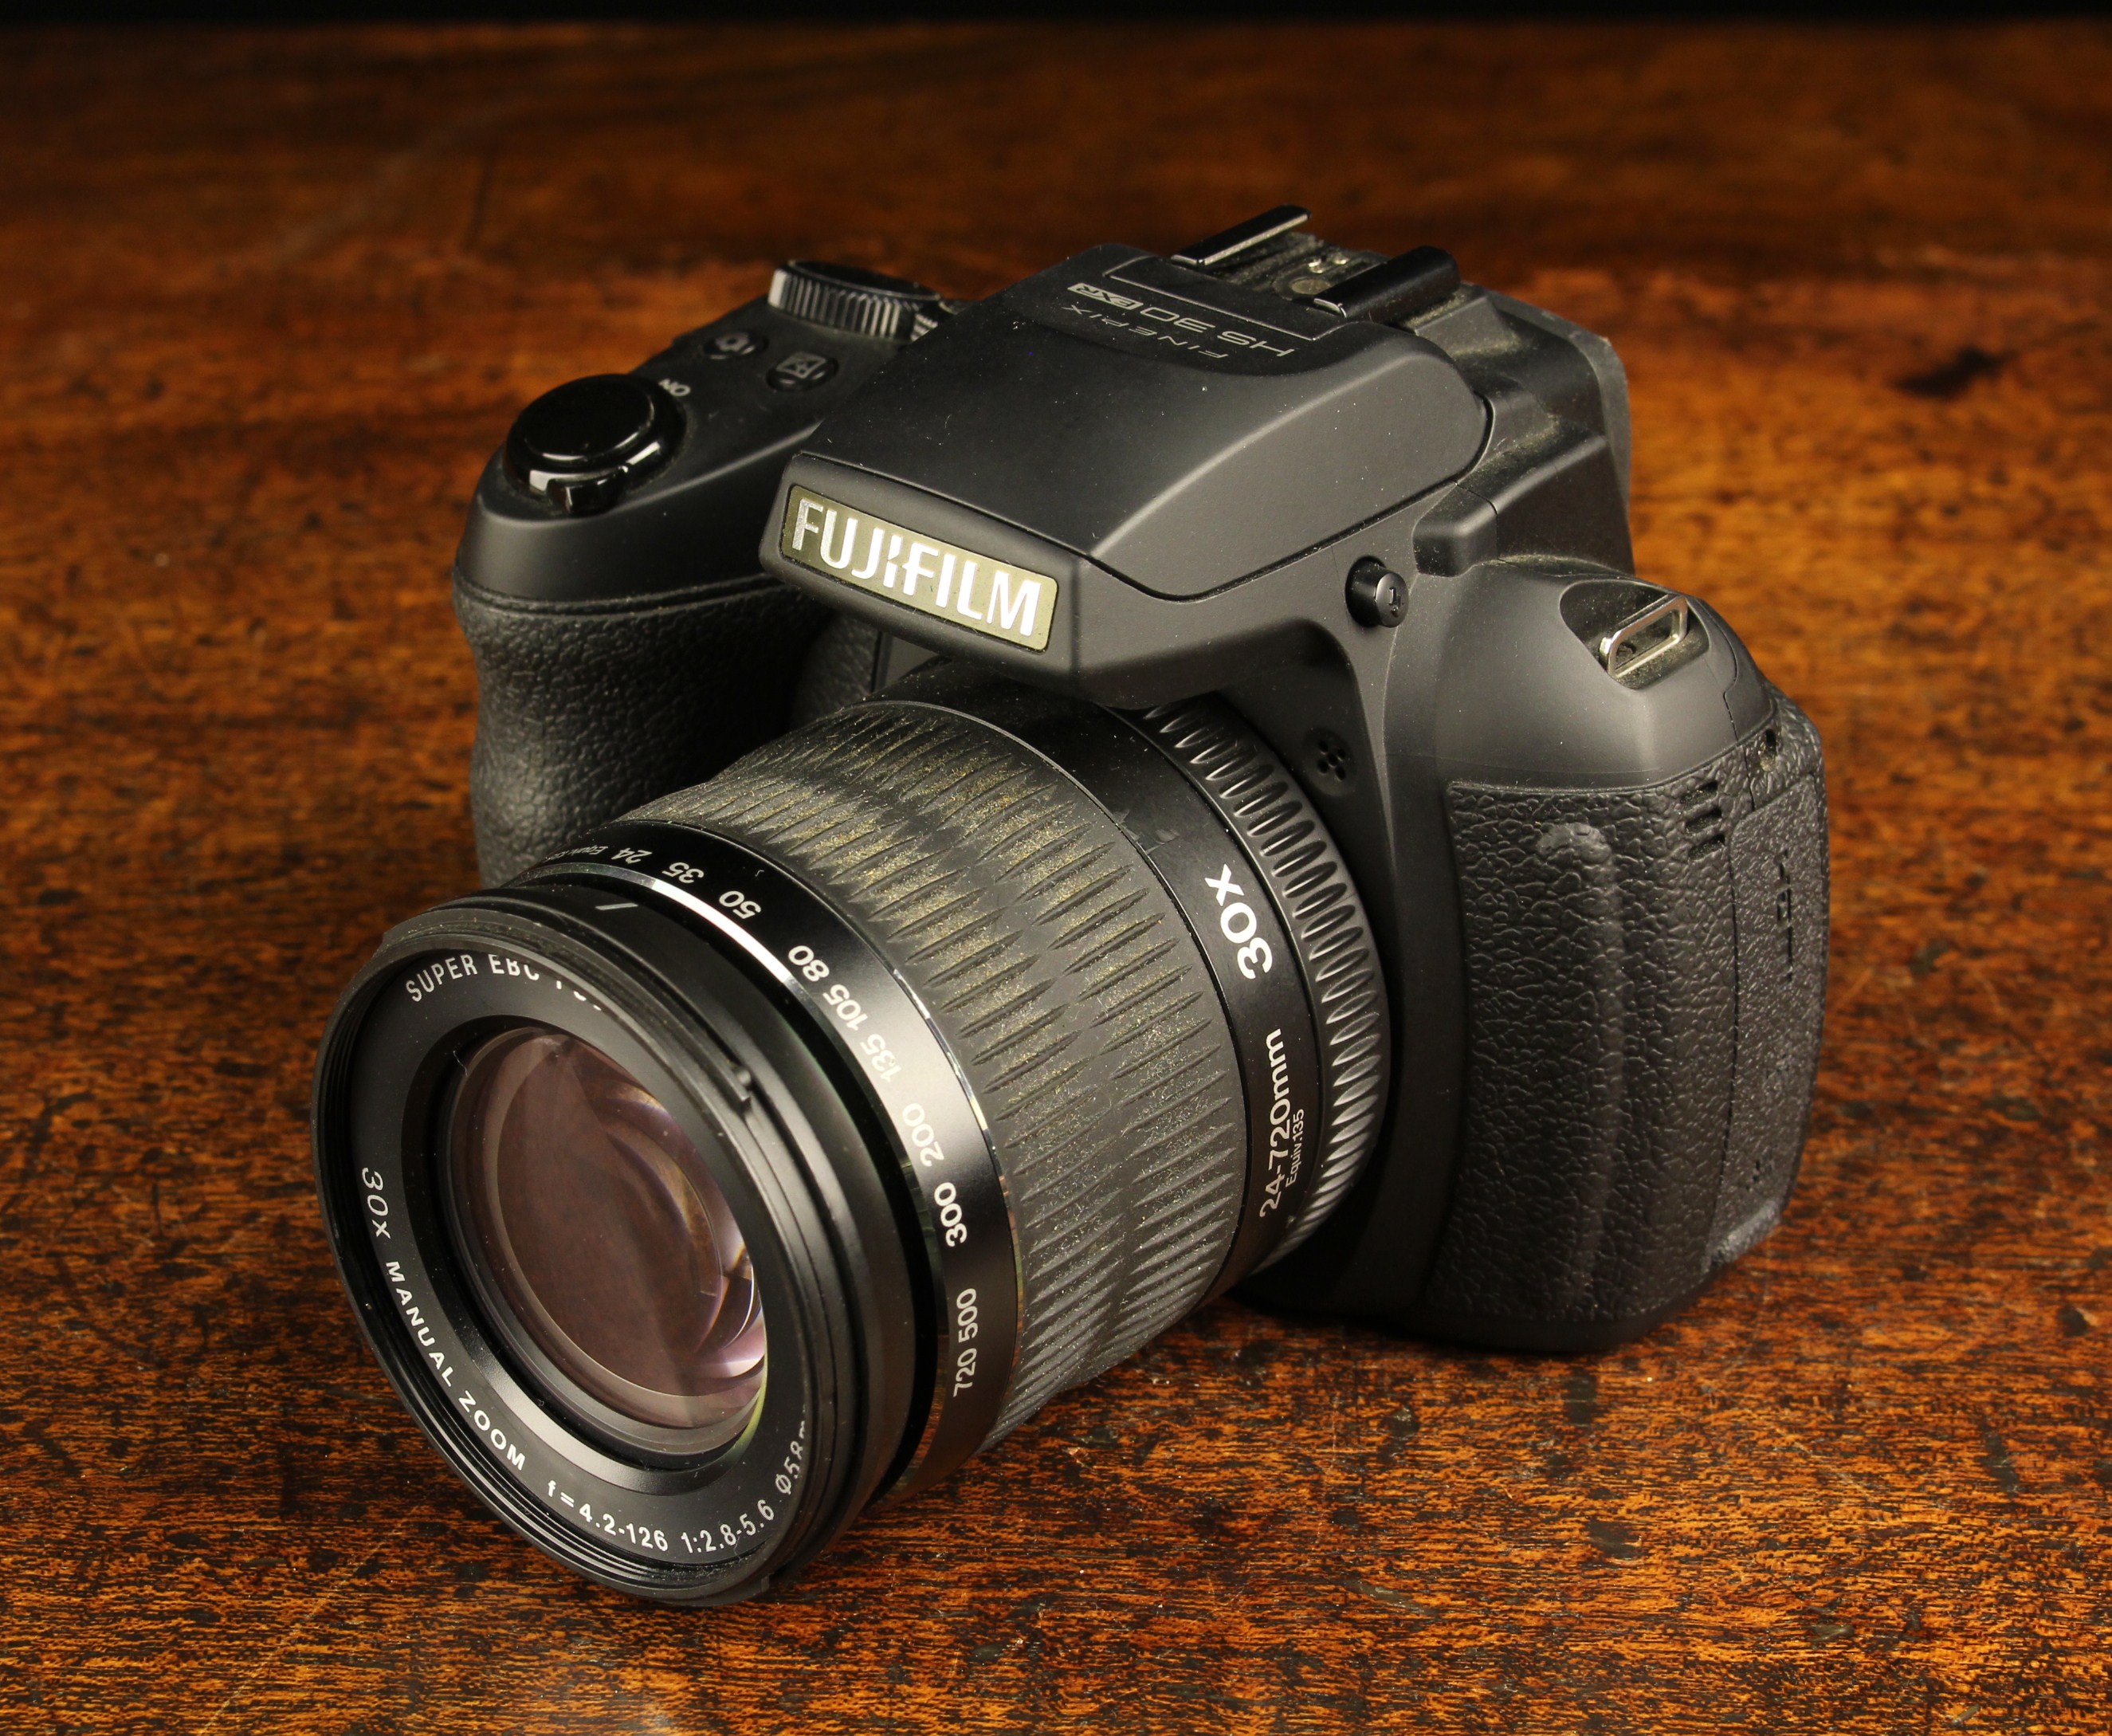 A Fujifilm HS 30 Digital Camera with 24-72 mm zoom lens, a Kenko 4 GB card,